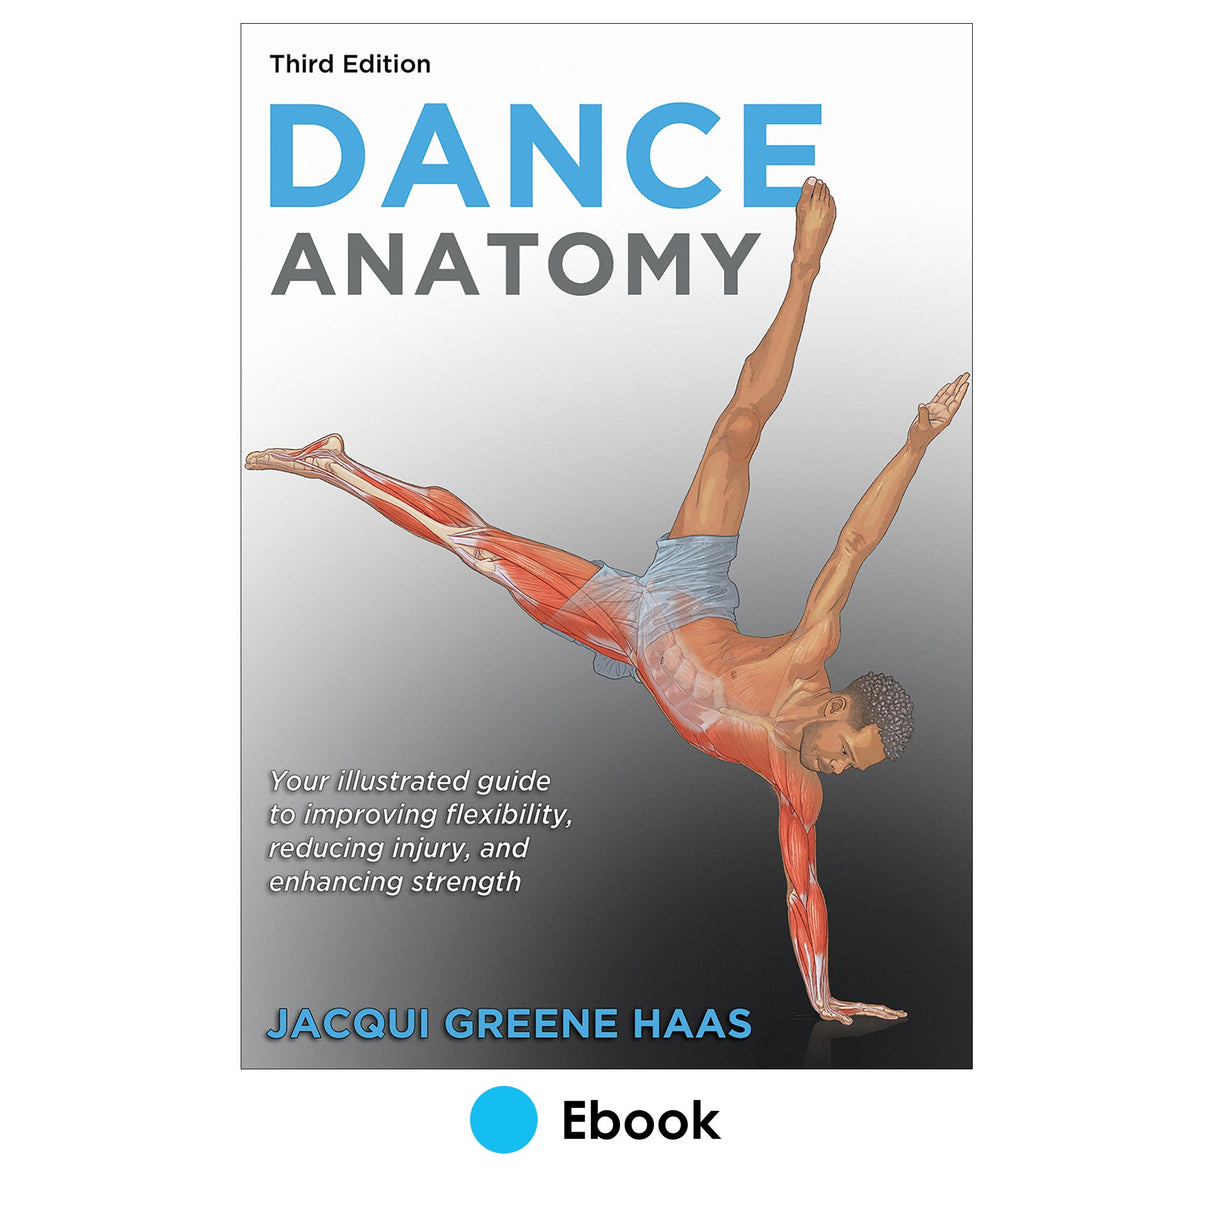 Dance Anatomy 3rd Edition epub